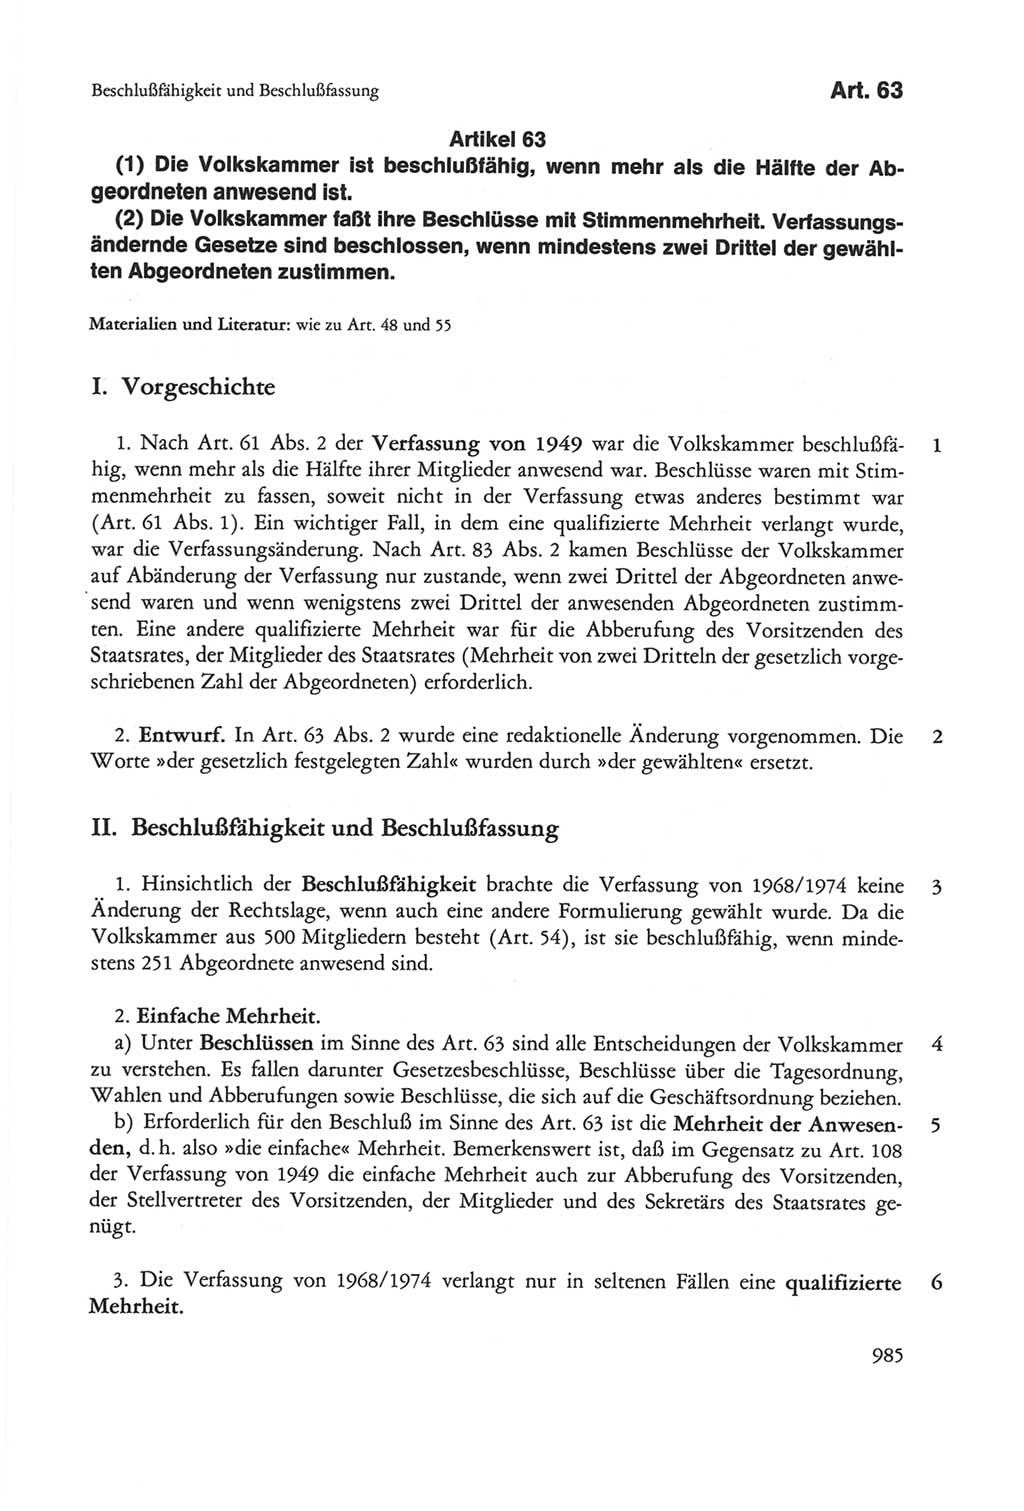 Die sozialistische Verfassung der Deutschen Demokratischen Republik (DDR), Kommentar 1982, Seite 985 (Soz. Verf. DDR Komm. 1982, S. 985)